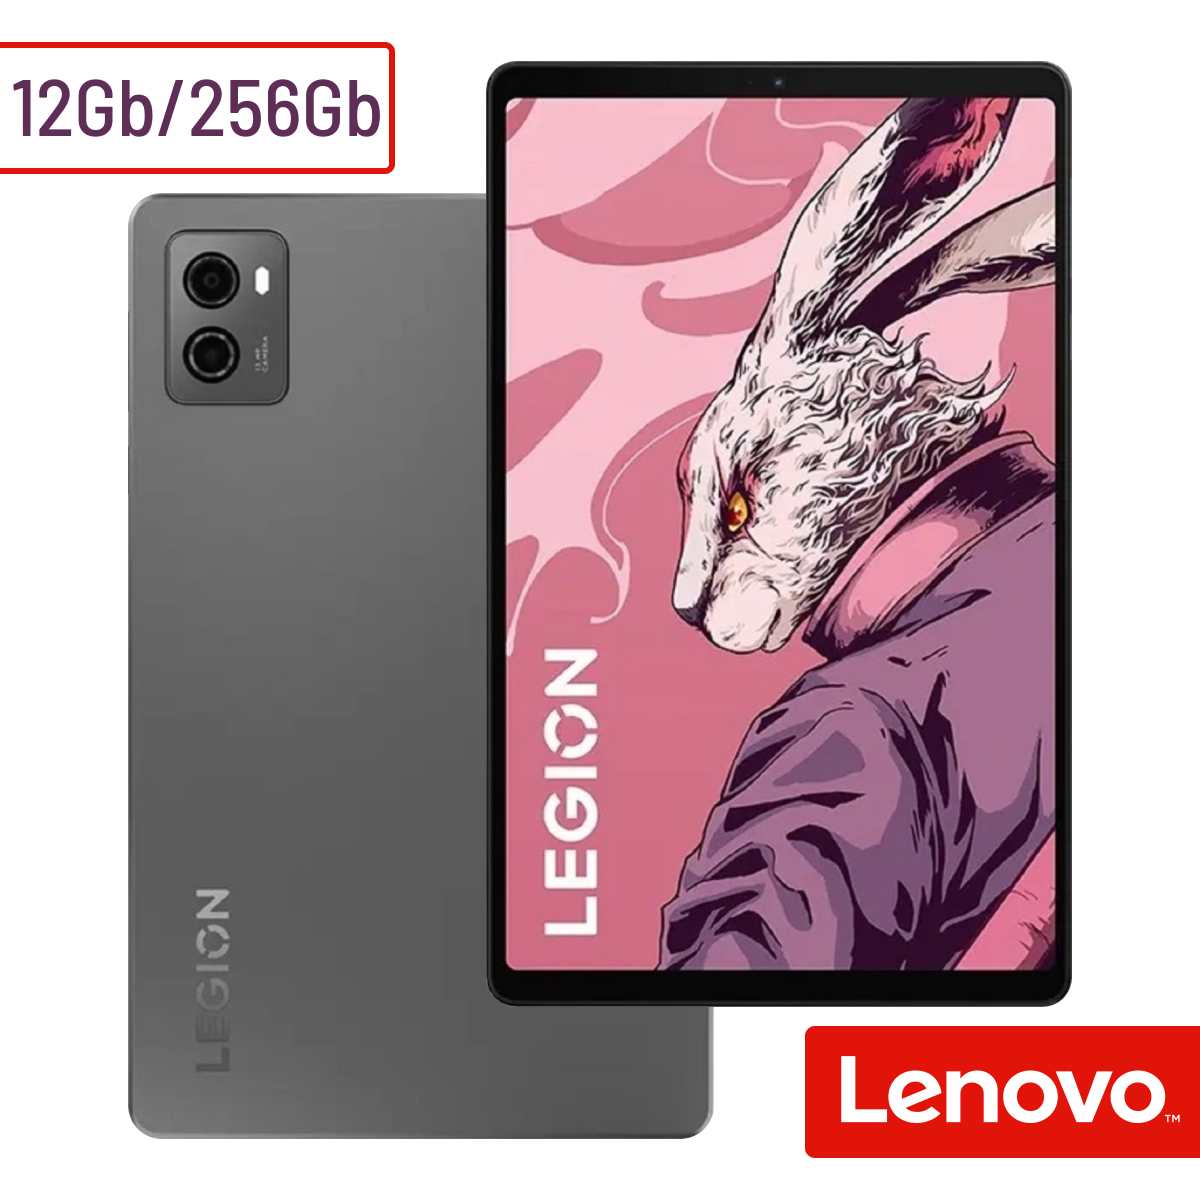 Планшет Lenovo Legion Y700 (TB320FC) 12GB/256GB Storm Grey, купить в Москве, цены в интернет-магазинах на Мегамаркет